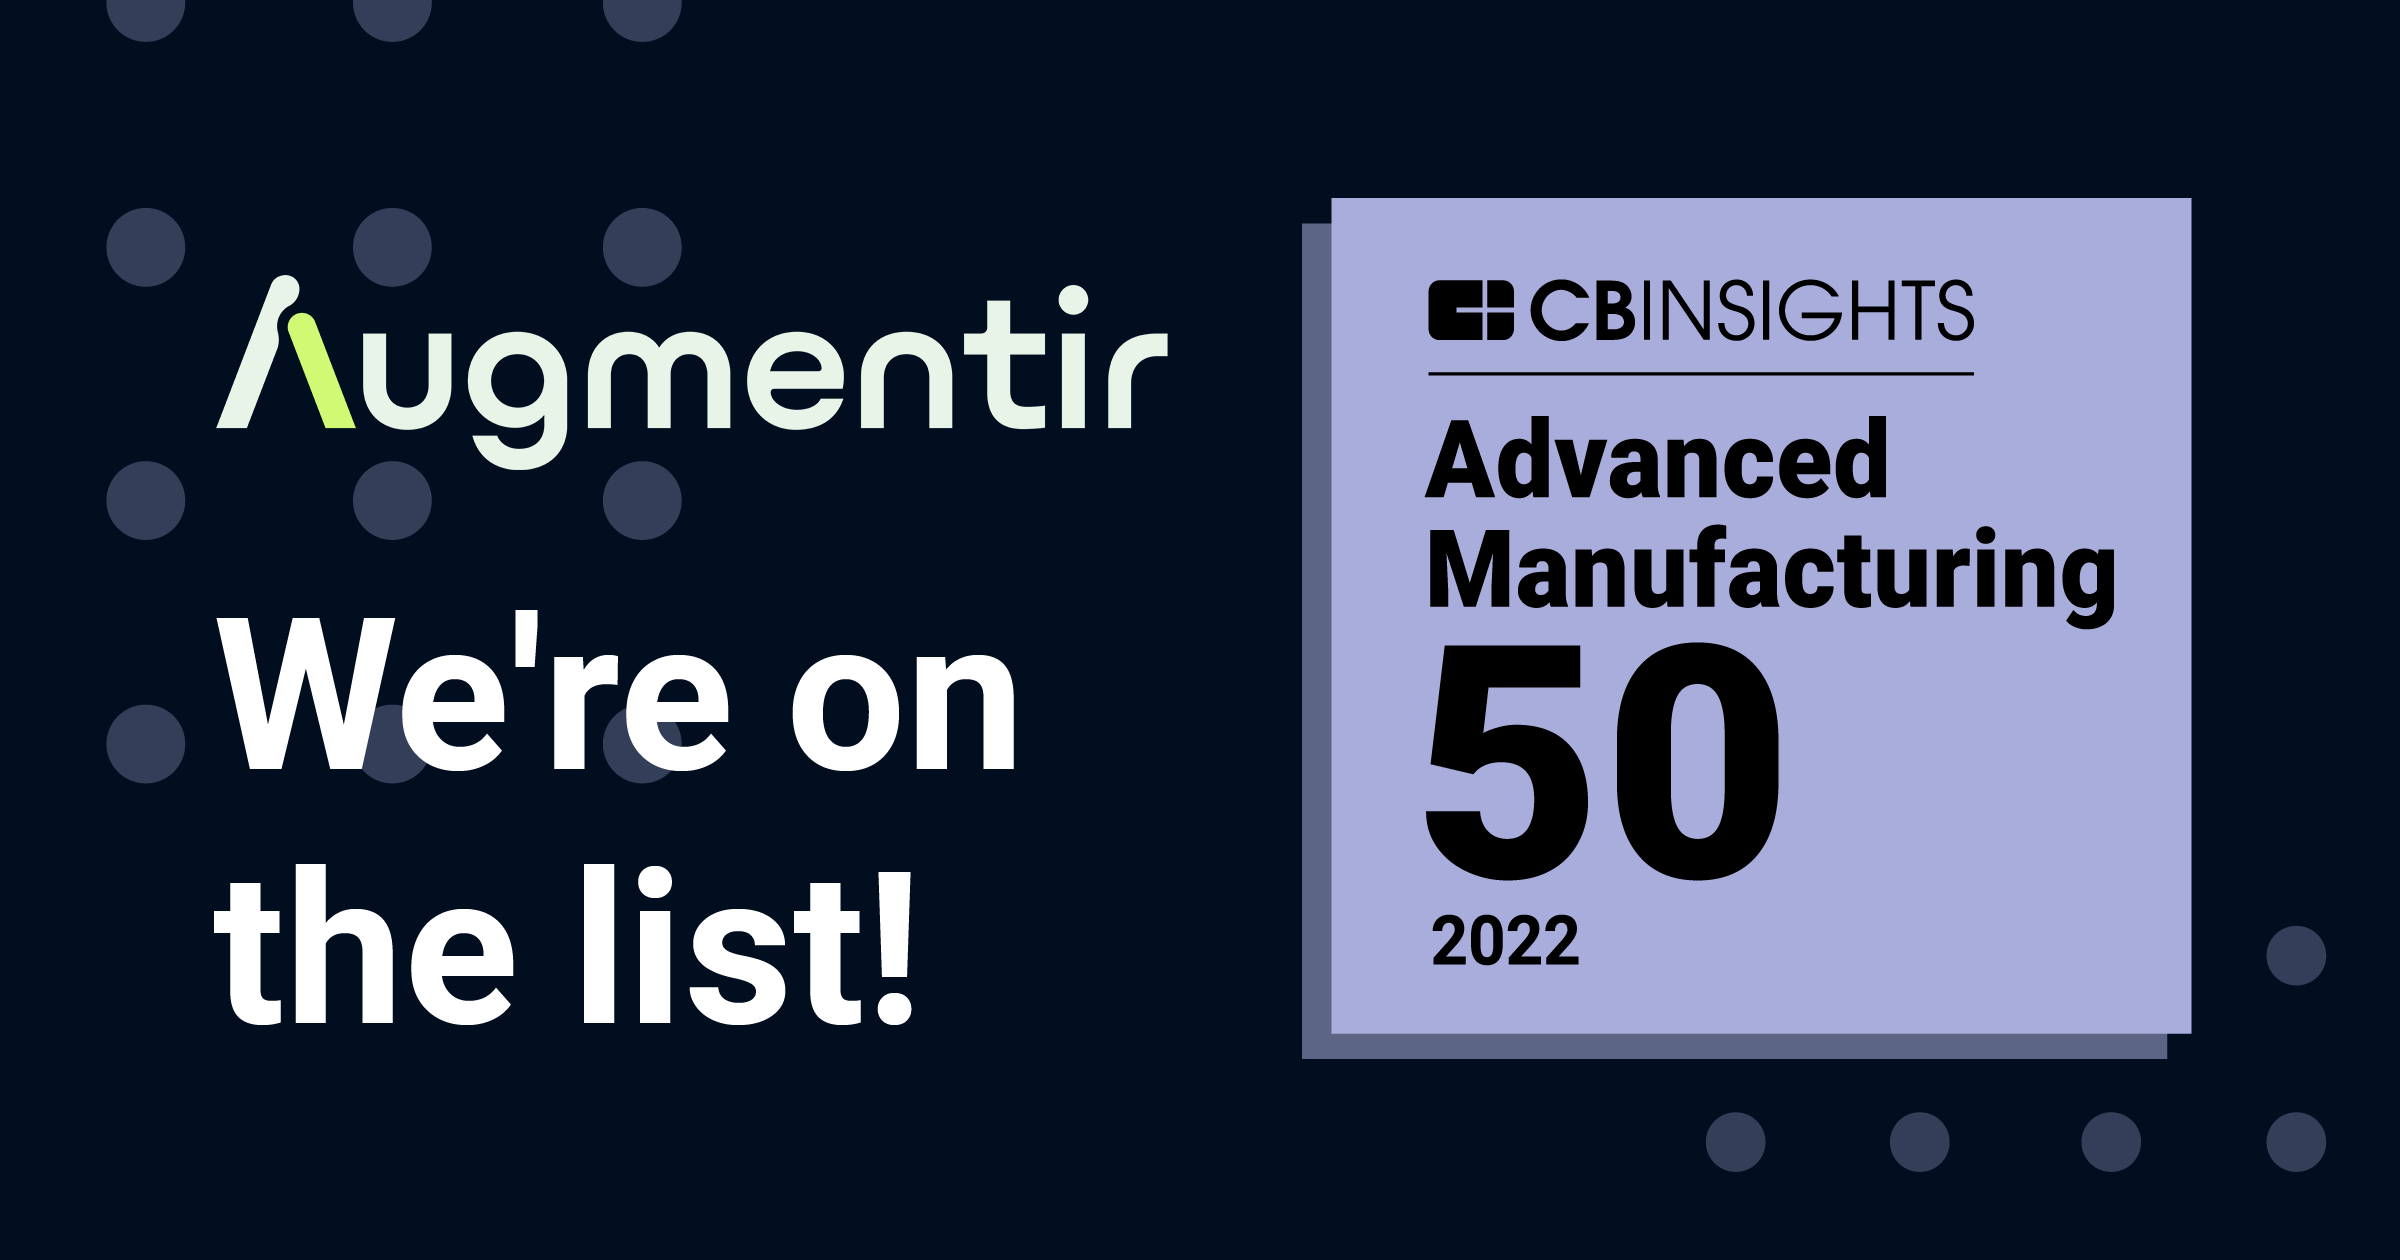 Augmentir in die CB Insights Advanced Manufacturing Top 50 aufgenommen